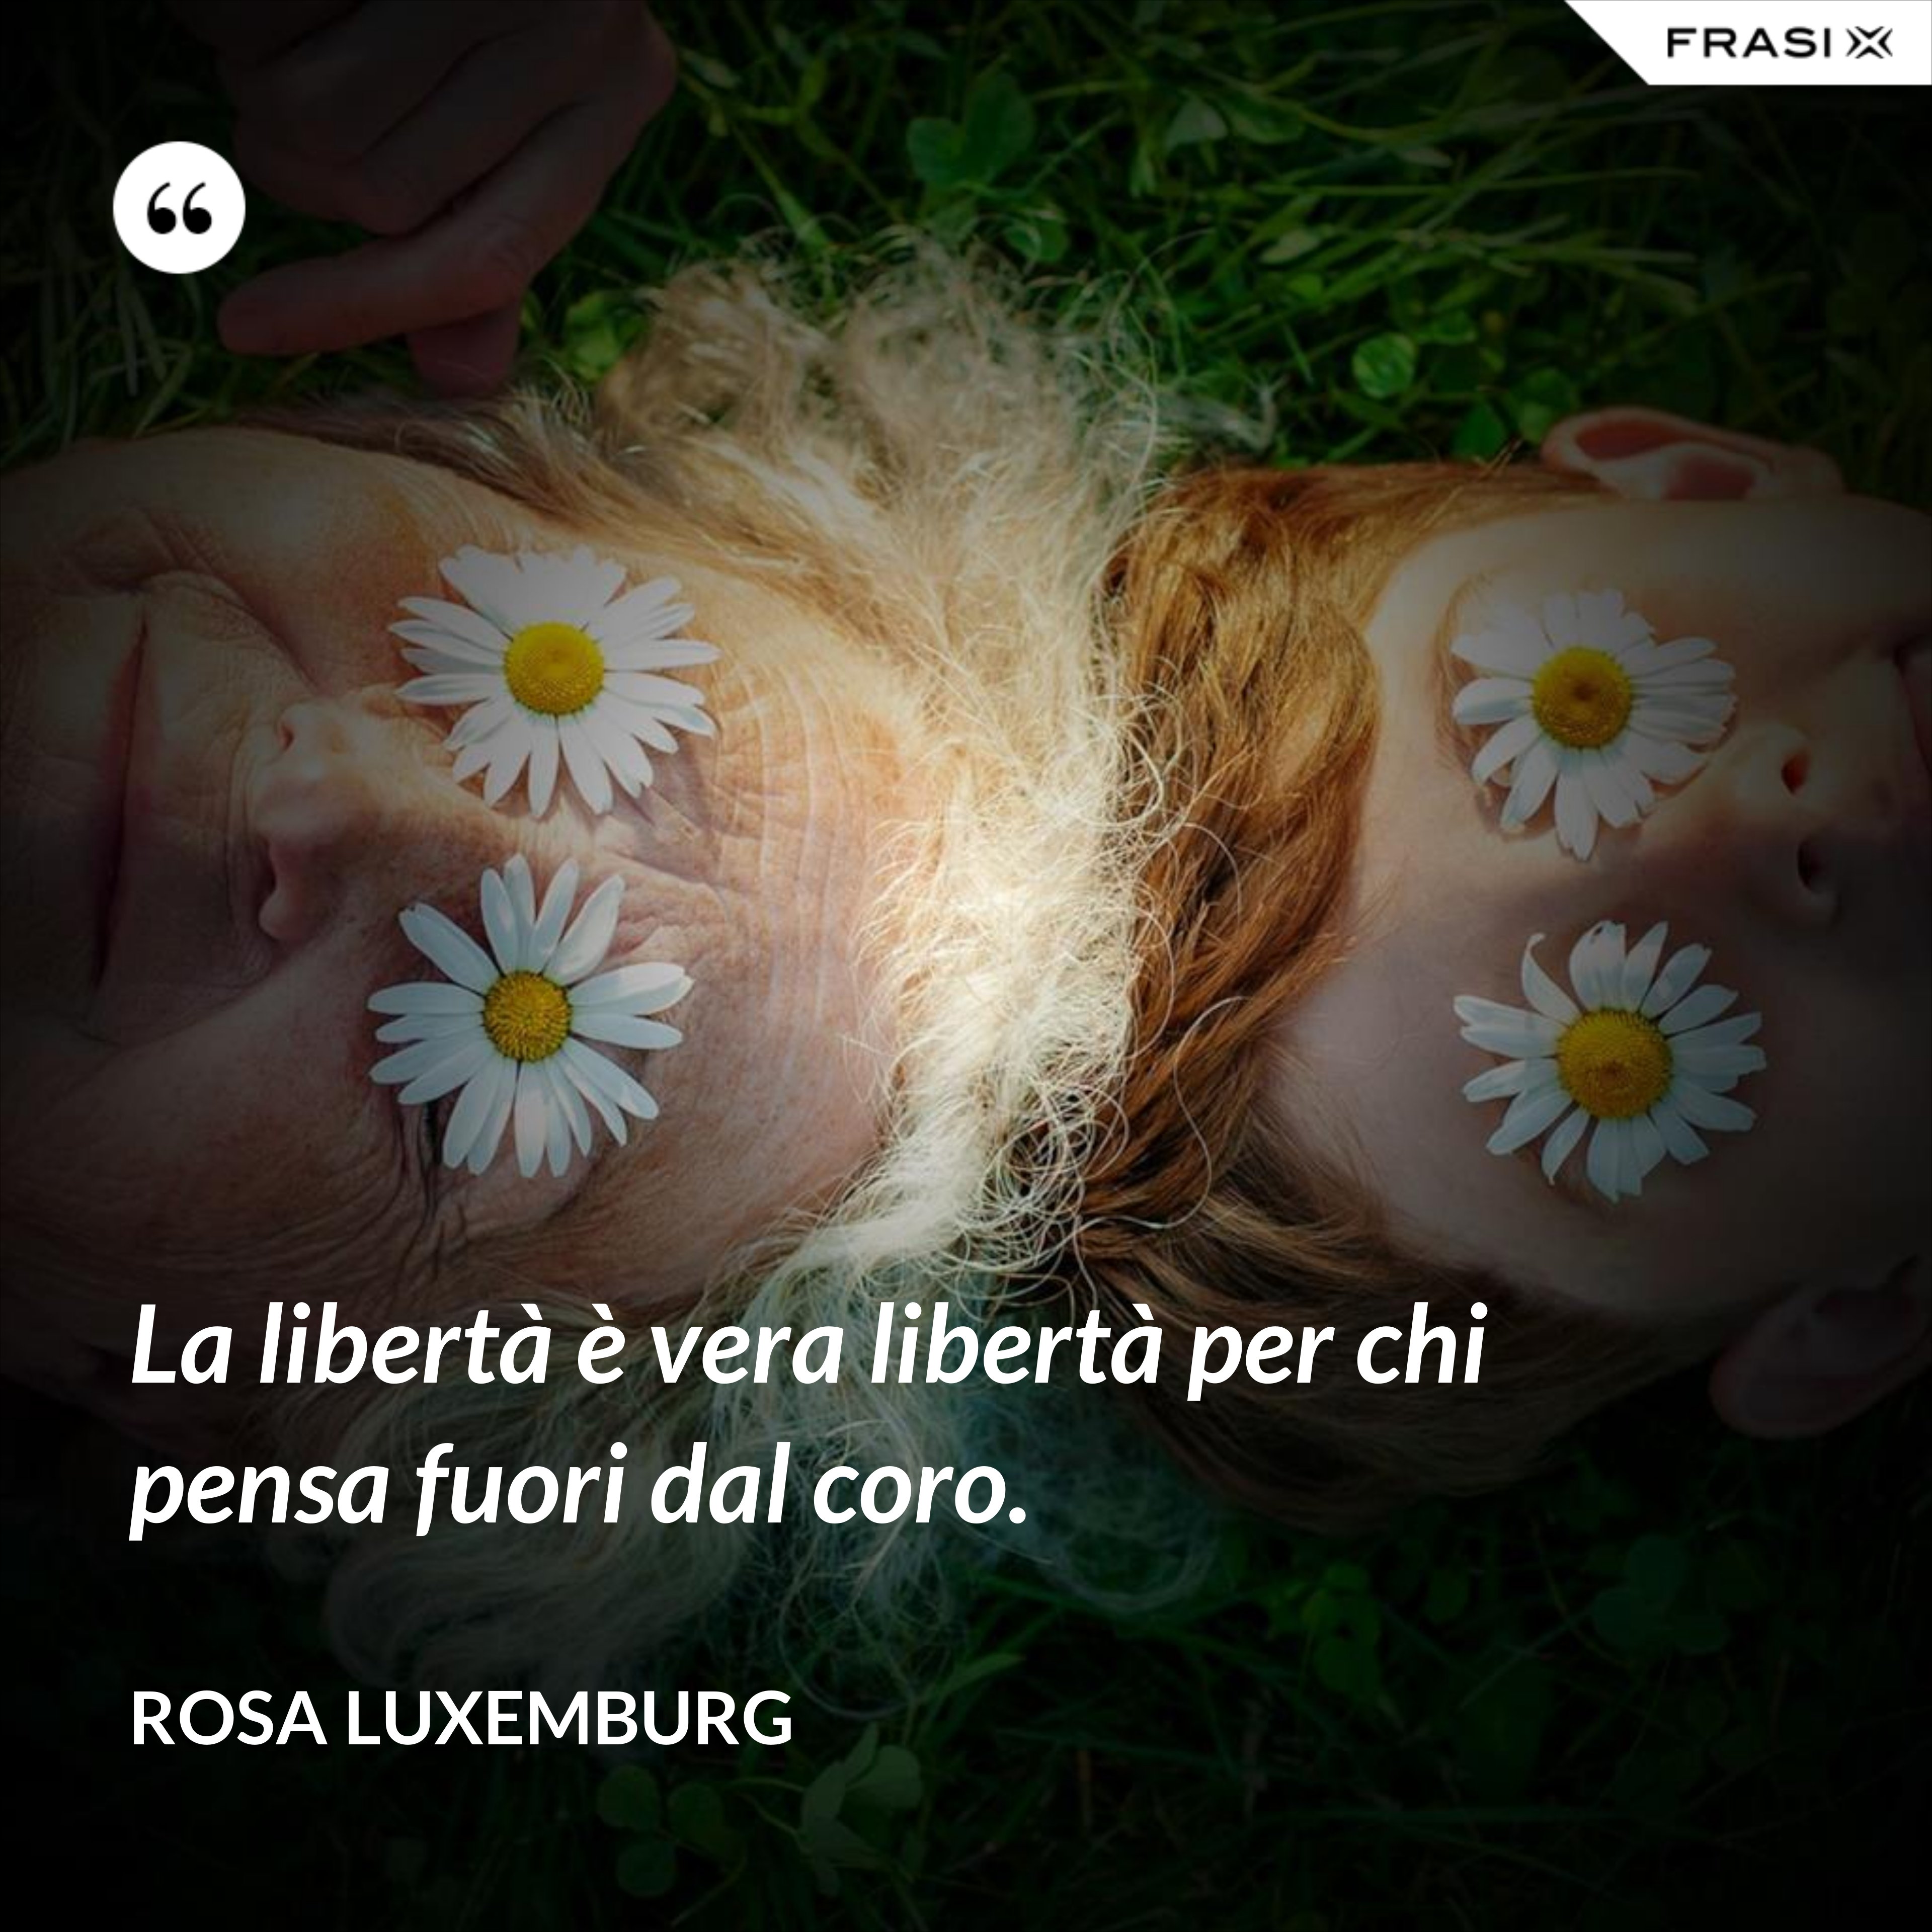 La libertà è vera libertà per chi pensa fuori dal coro. - Rosa Luxemburg